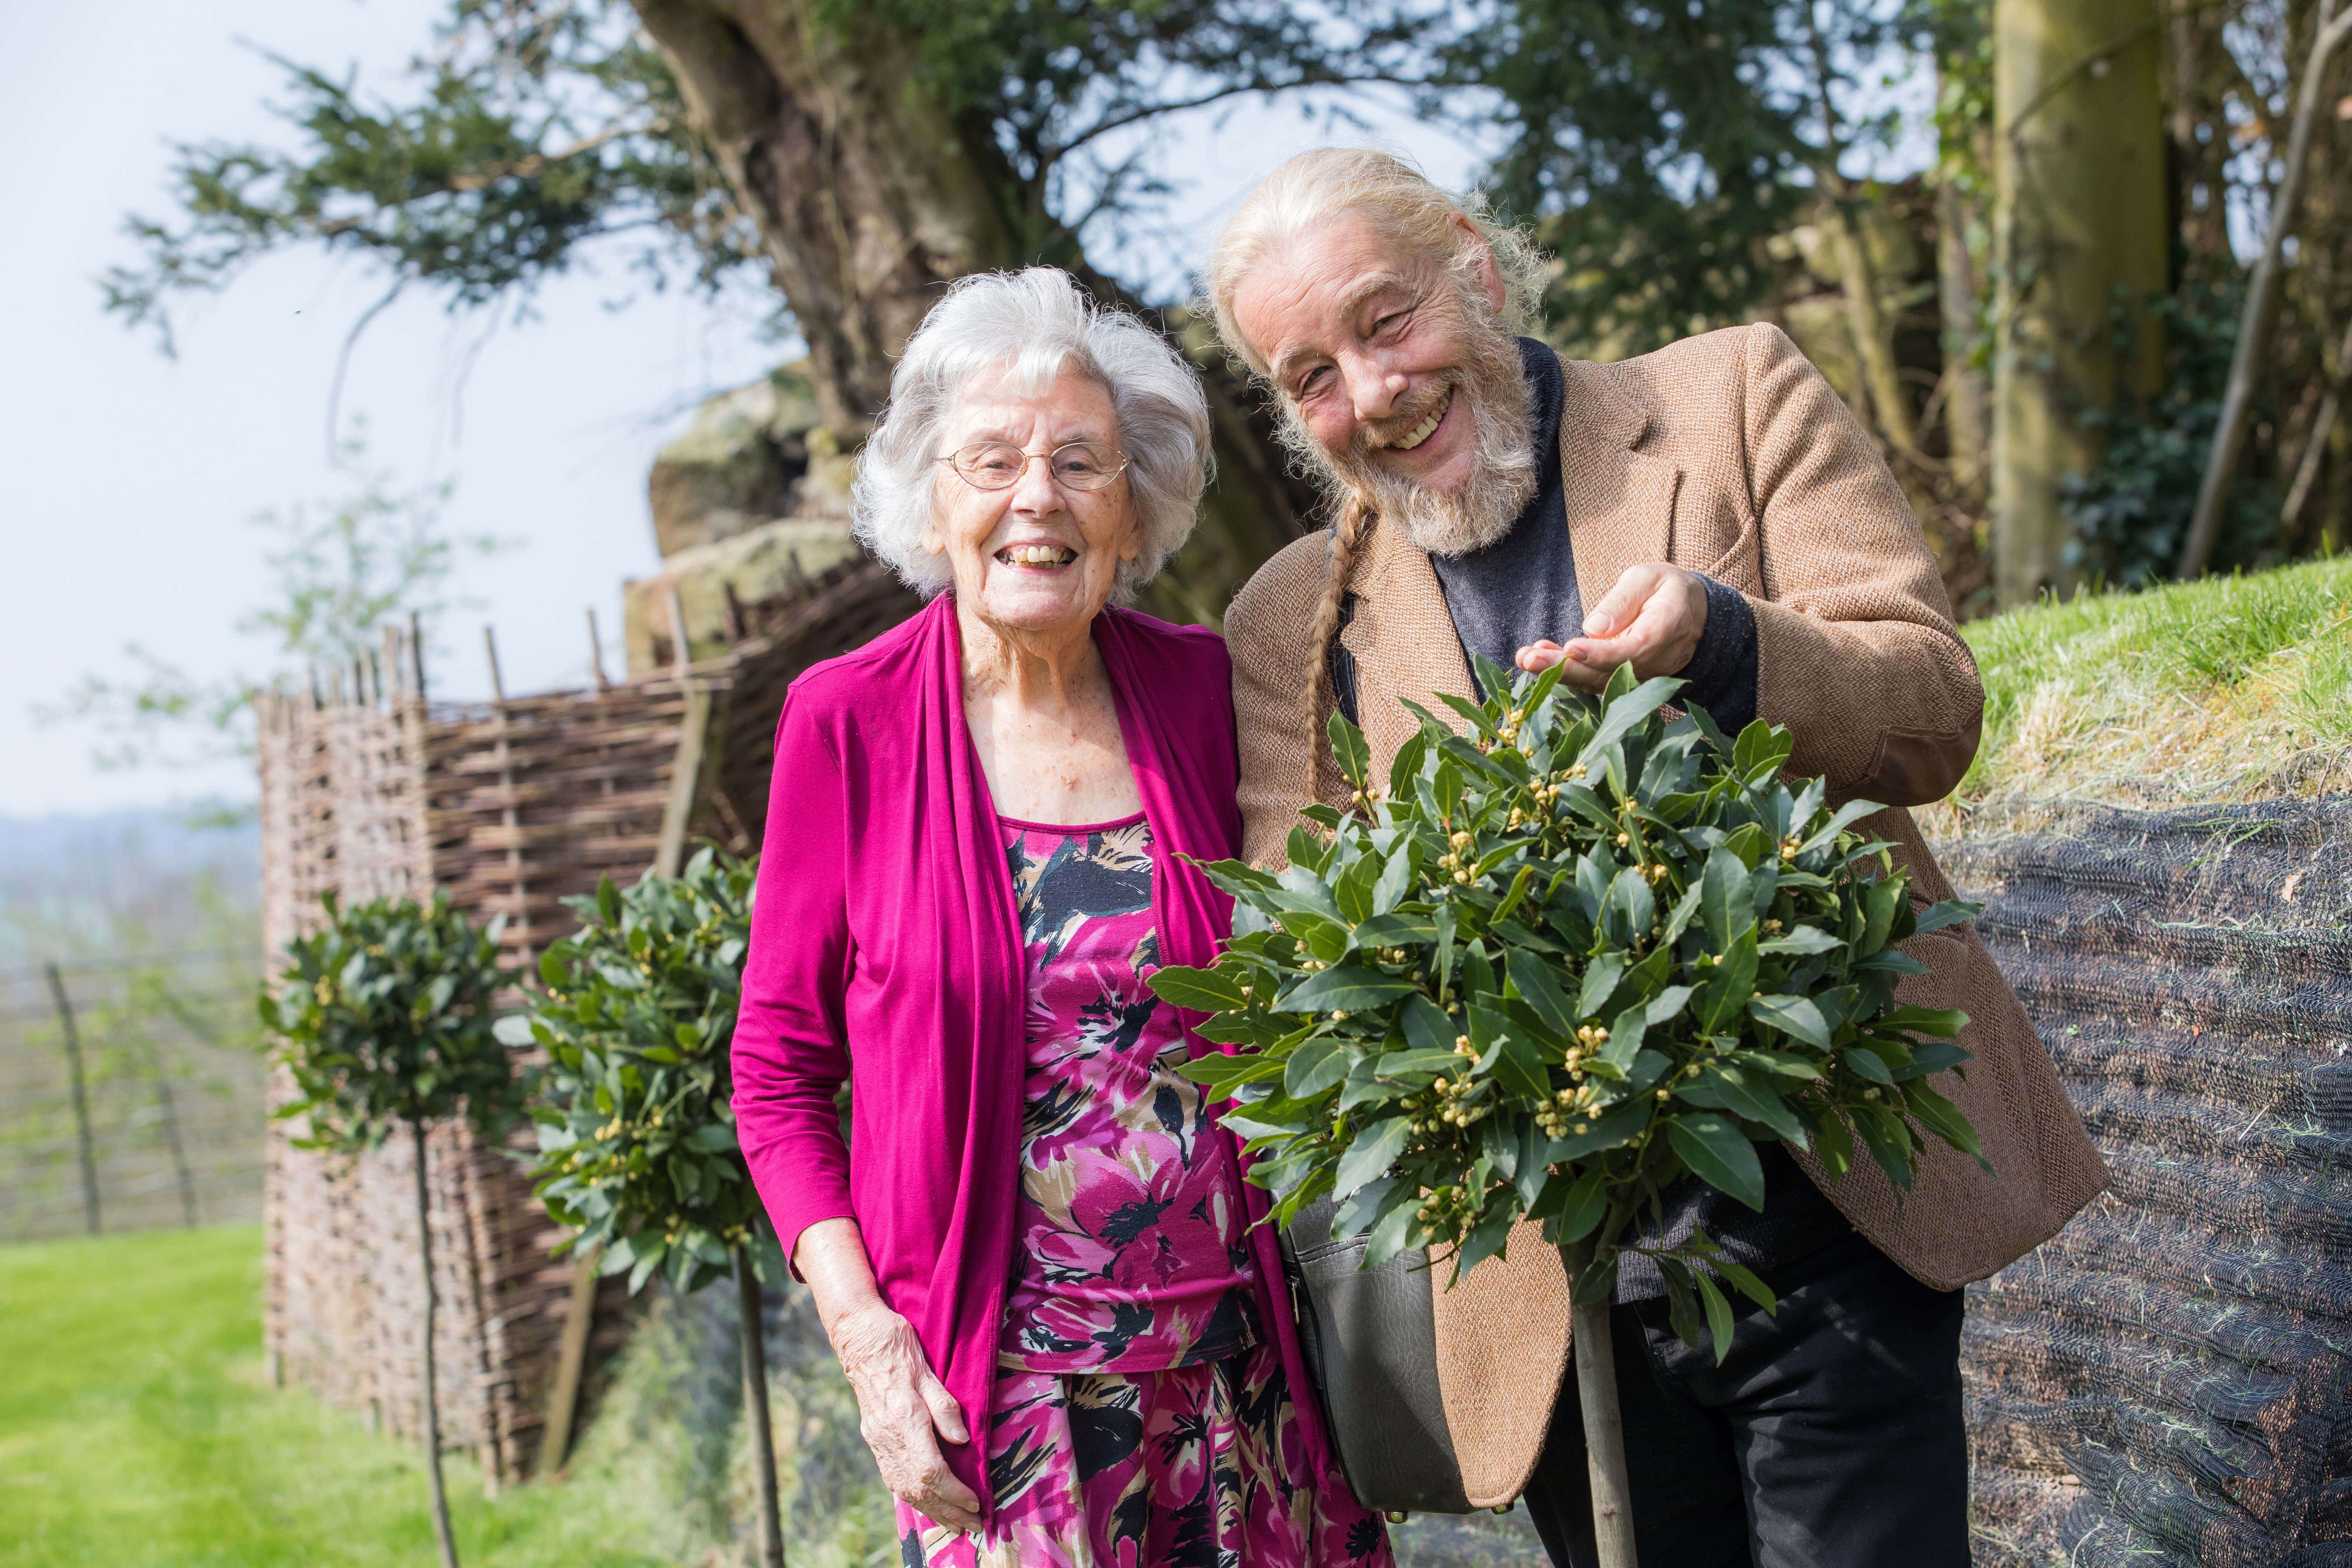 Dementia-friendly garden design planned by Bob Flowerdew